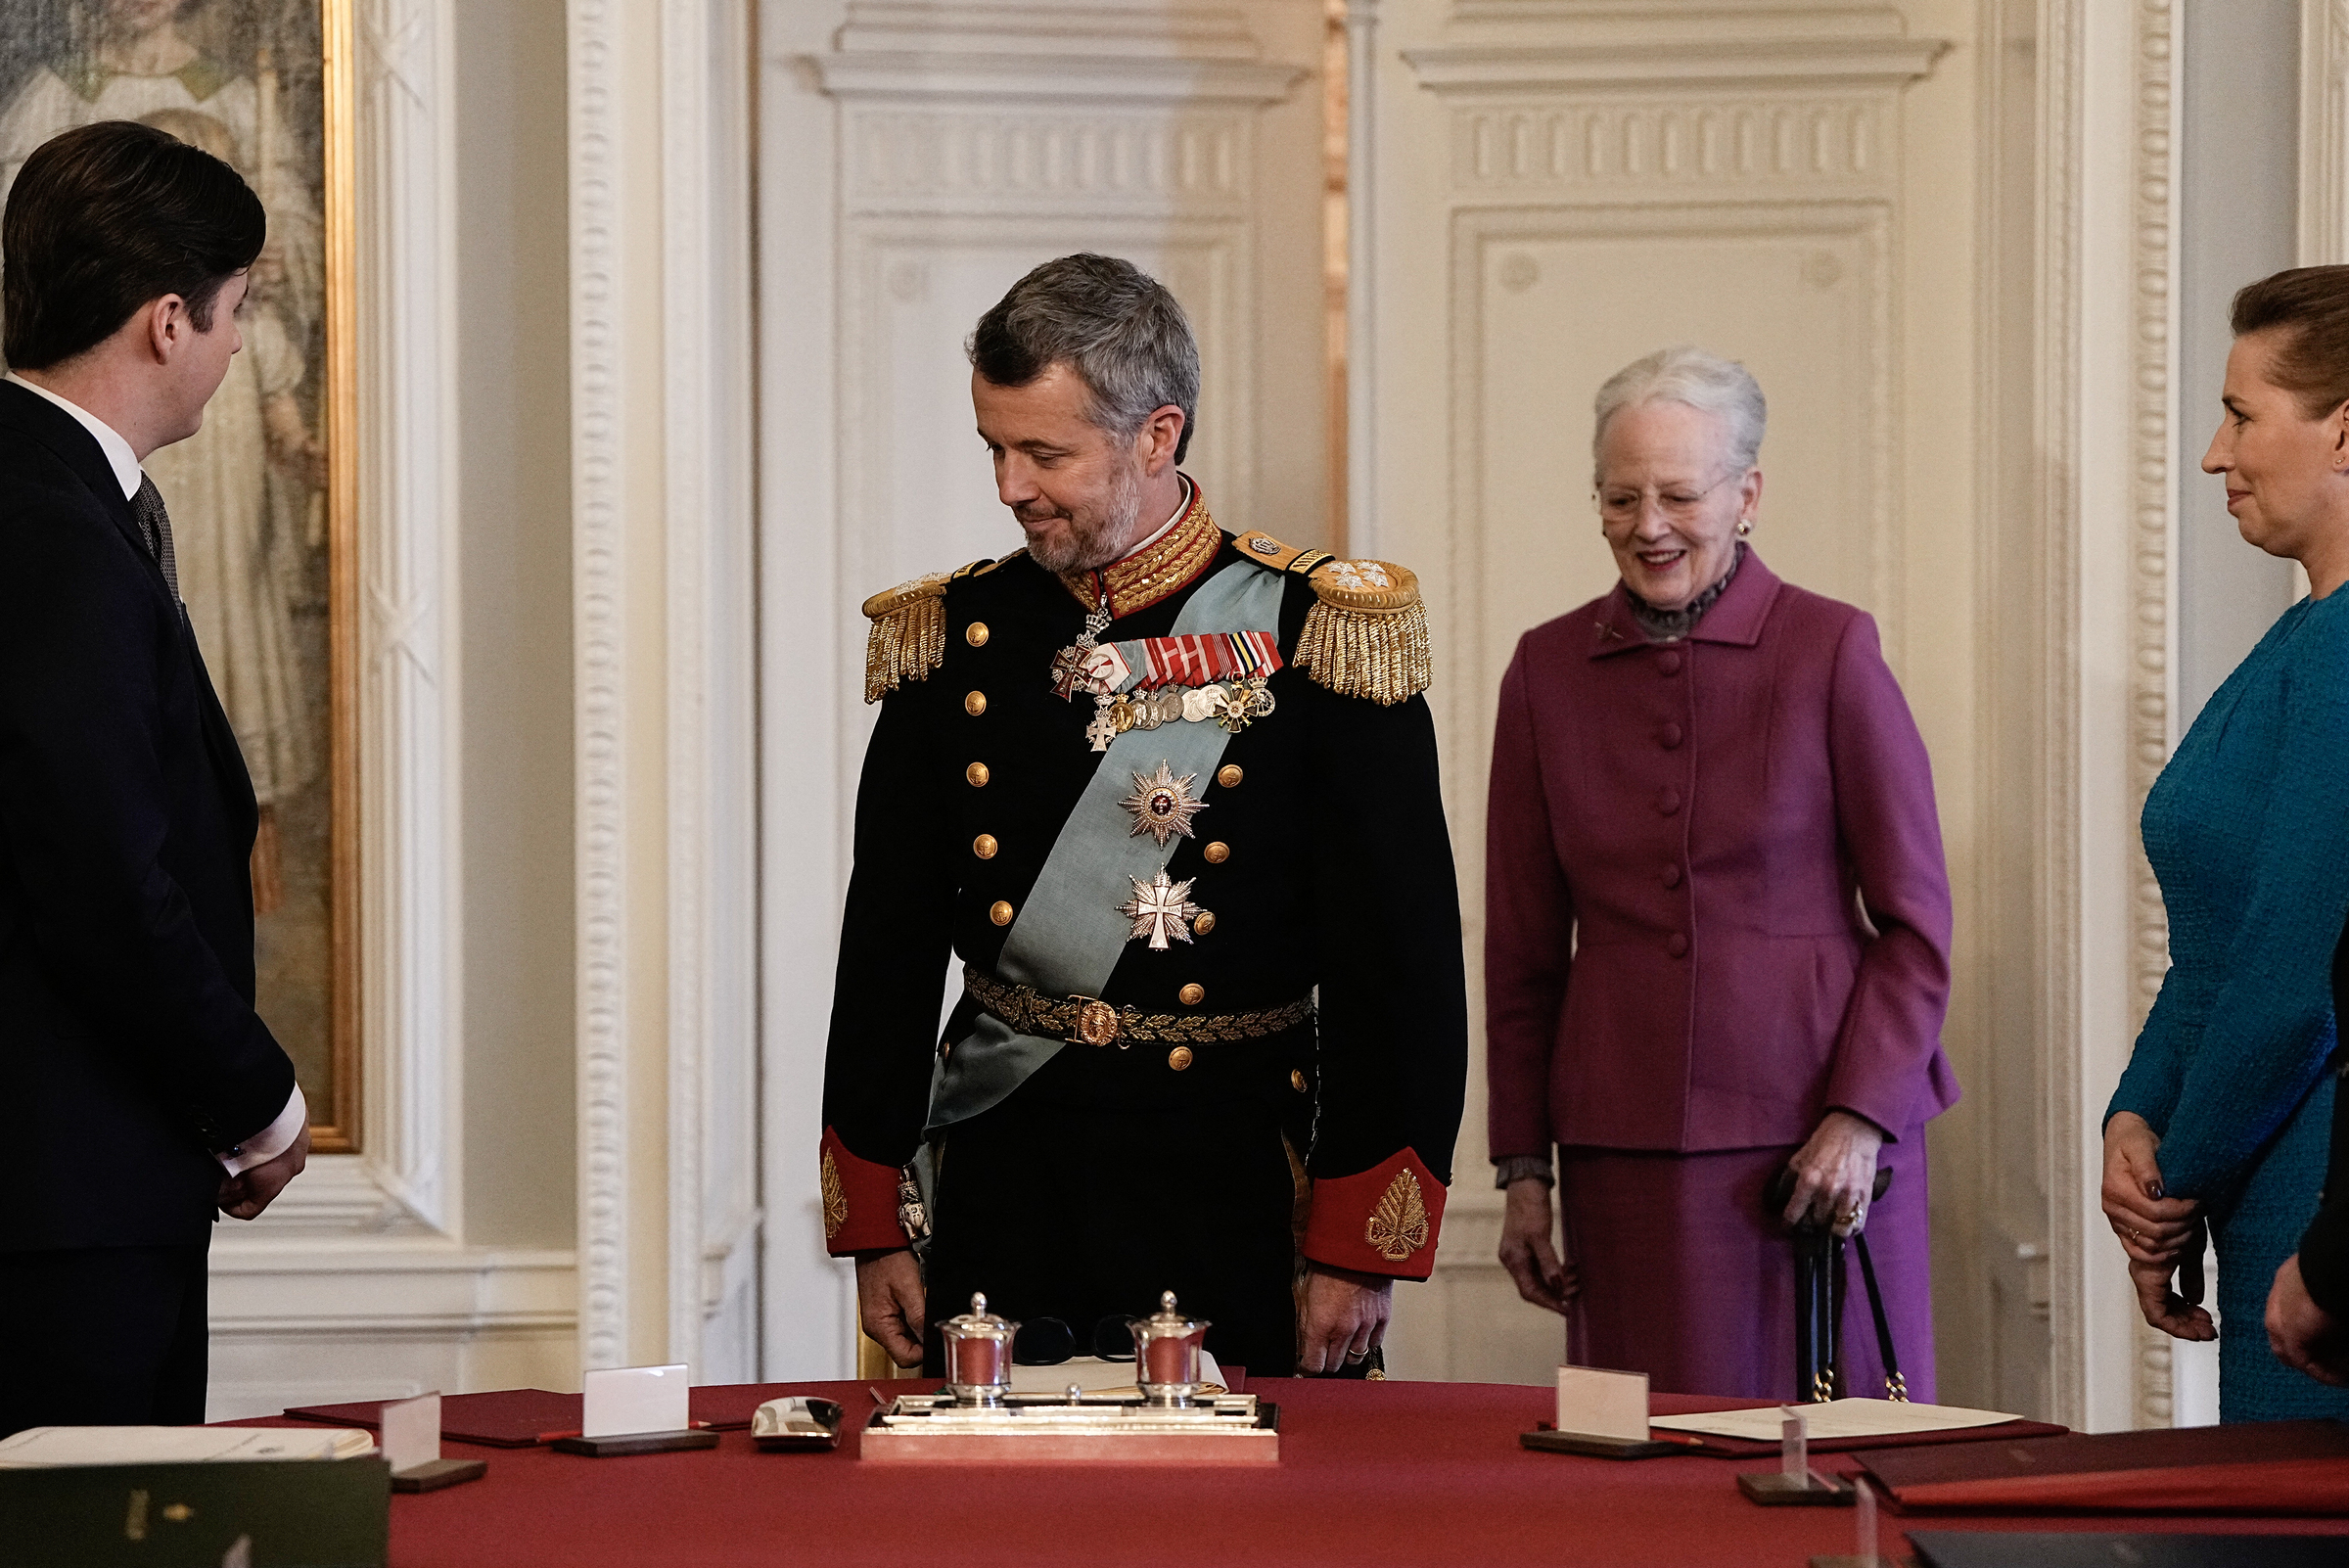 Vua Frederik X nhận cương vị mới sau khi Nữ hoàng Margrethe II ký tuyên bố thoái vị trong cuộc họp của Hội đồng Nhà nước tại Cung điện Christiansborg ở Copehagen ngày 14/1. Ảnh: AFP